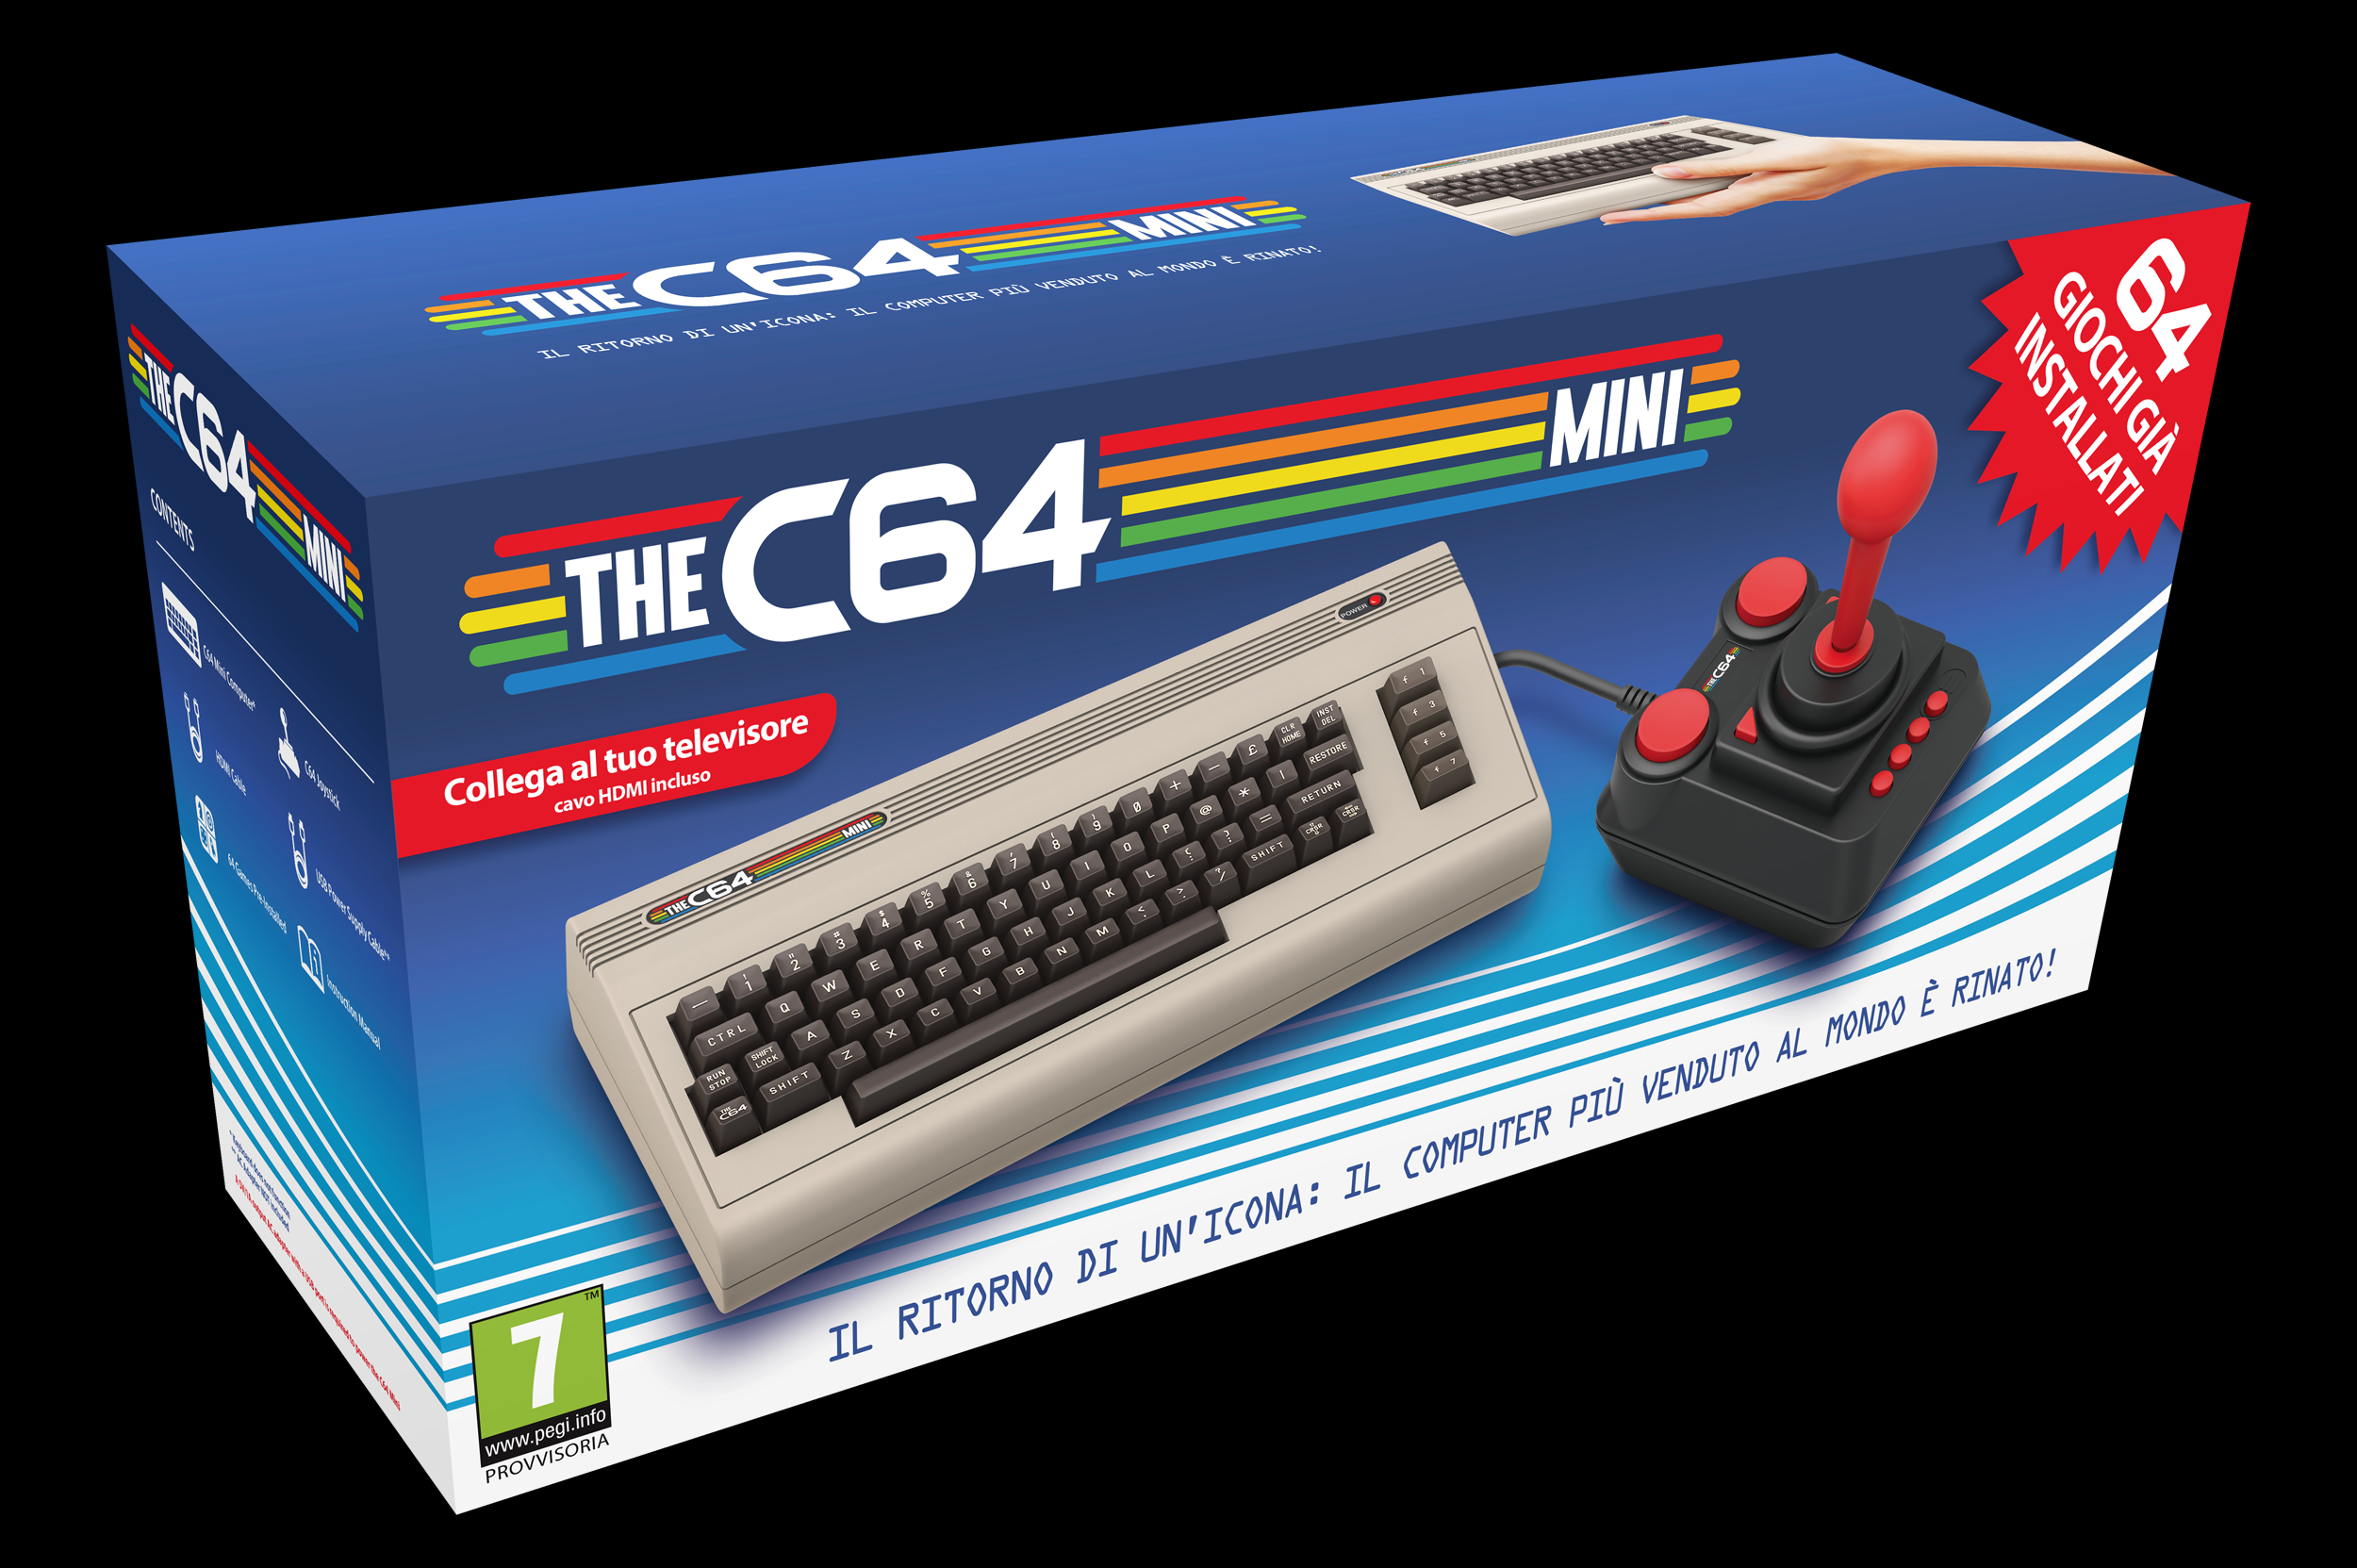 Mini Commodore 64 insieme a tantissimi giochi tornerà a farci giocare